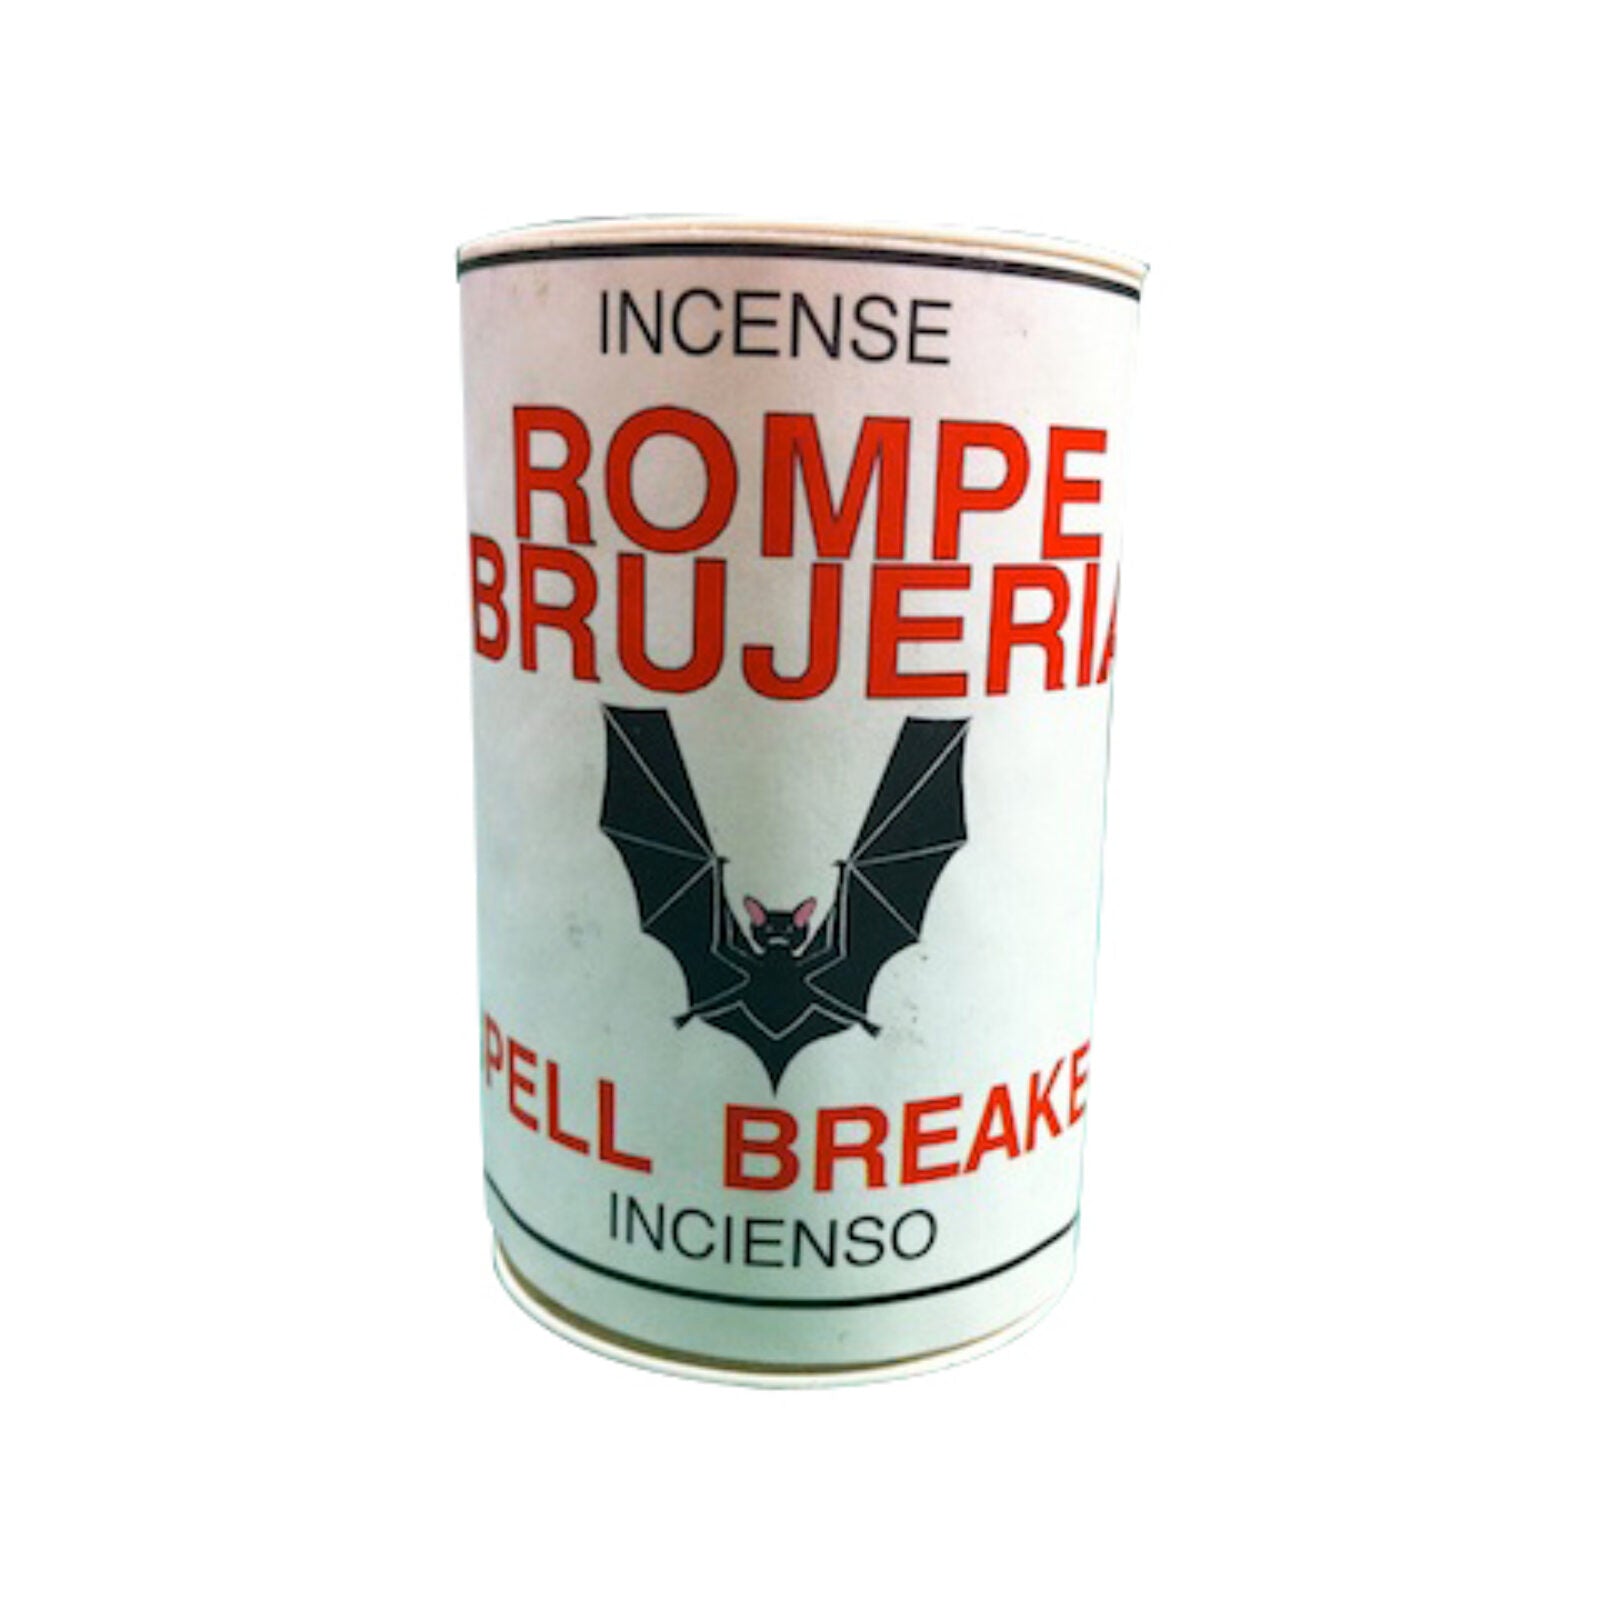 Spell Breaker Incense Powder